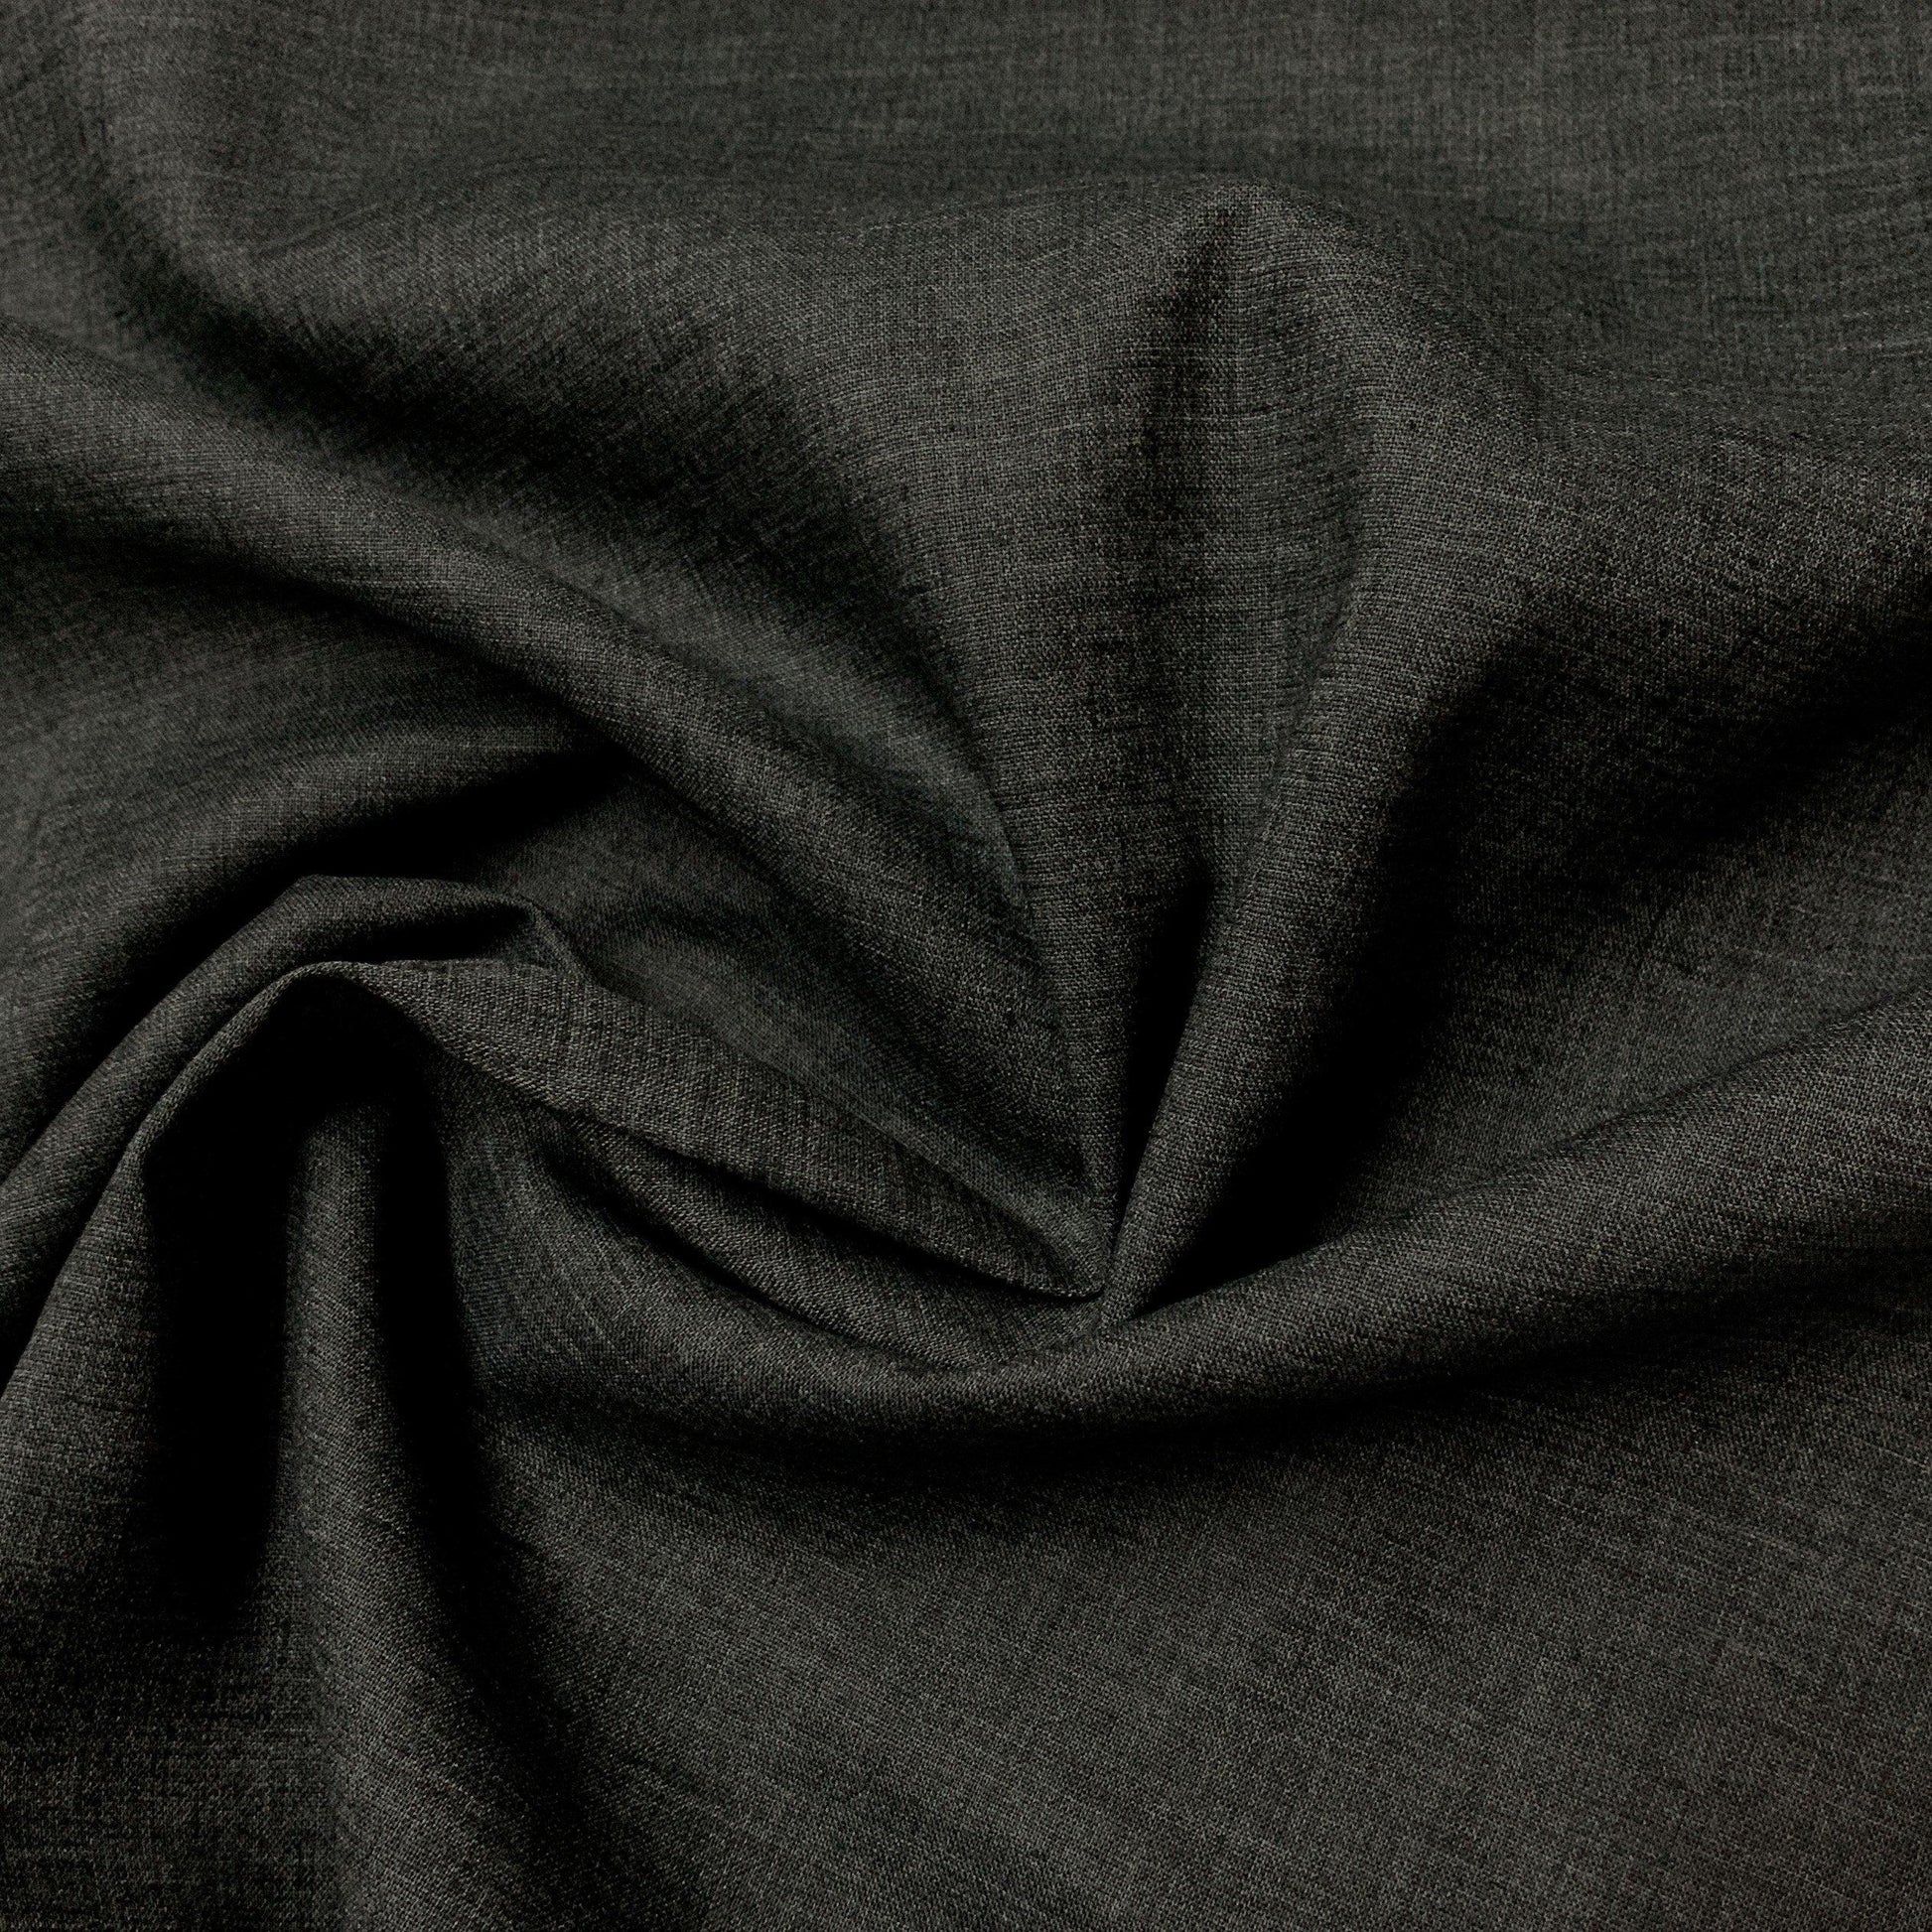 Charcoal Heather Hemp Blend Chambray Fabric - Nature's Fabrics